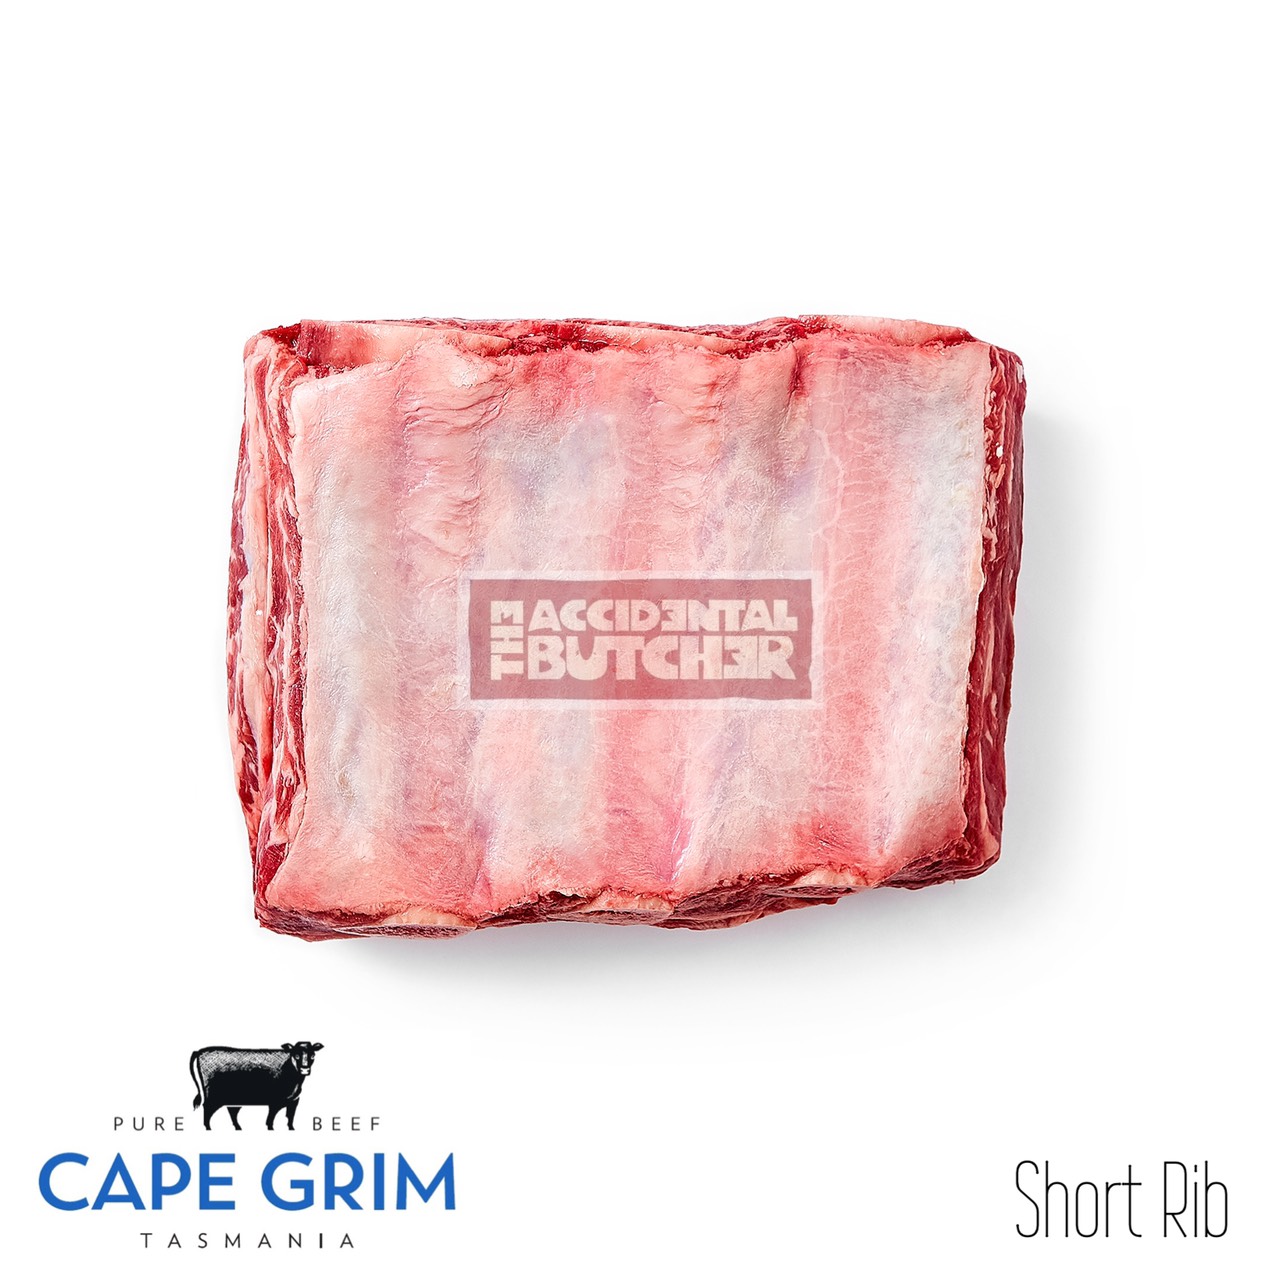 Cape Grim Short Ribs (3 Bones Stripe) - Whole piece